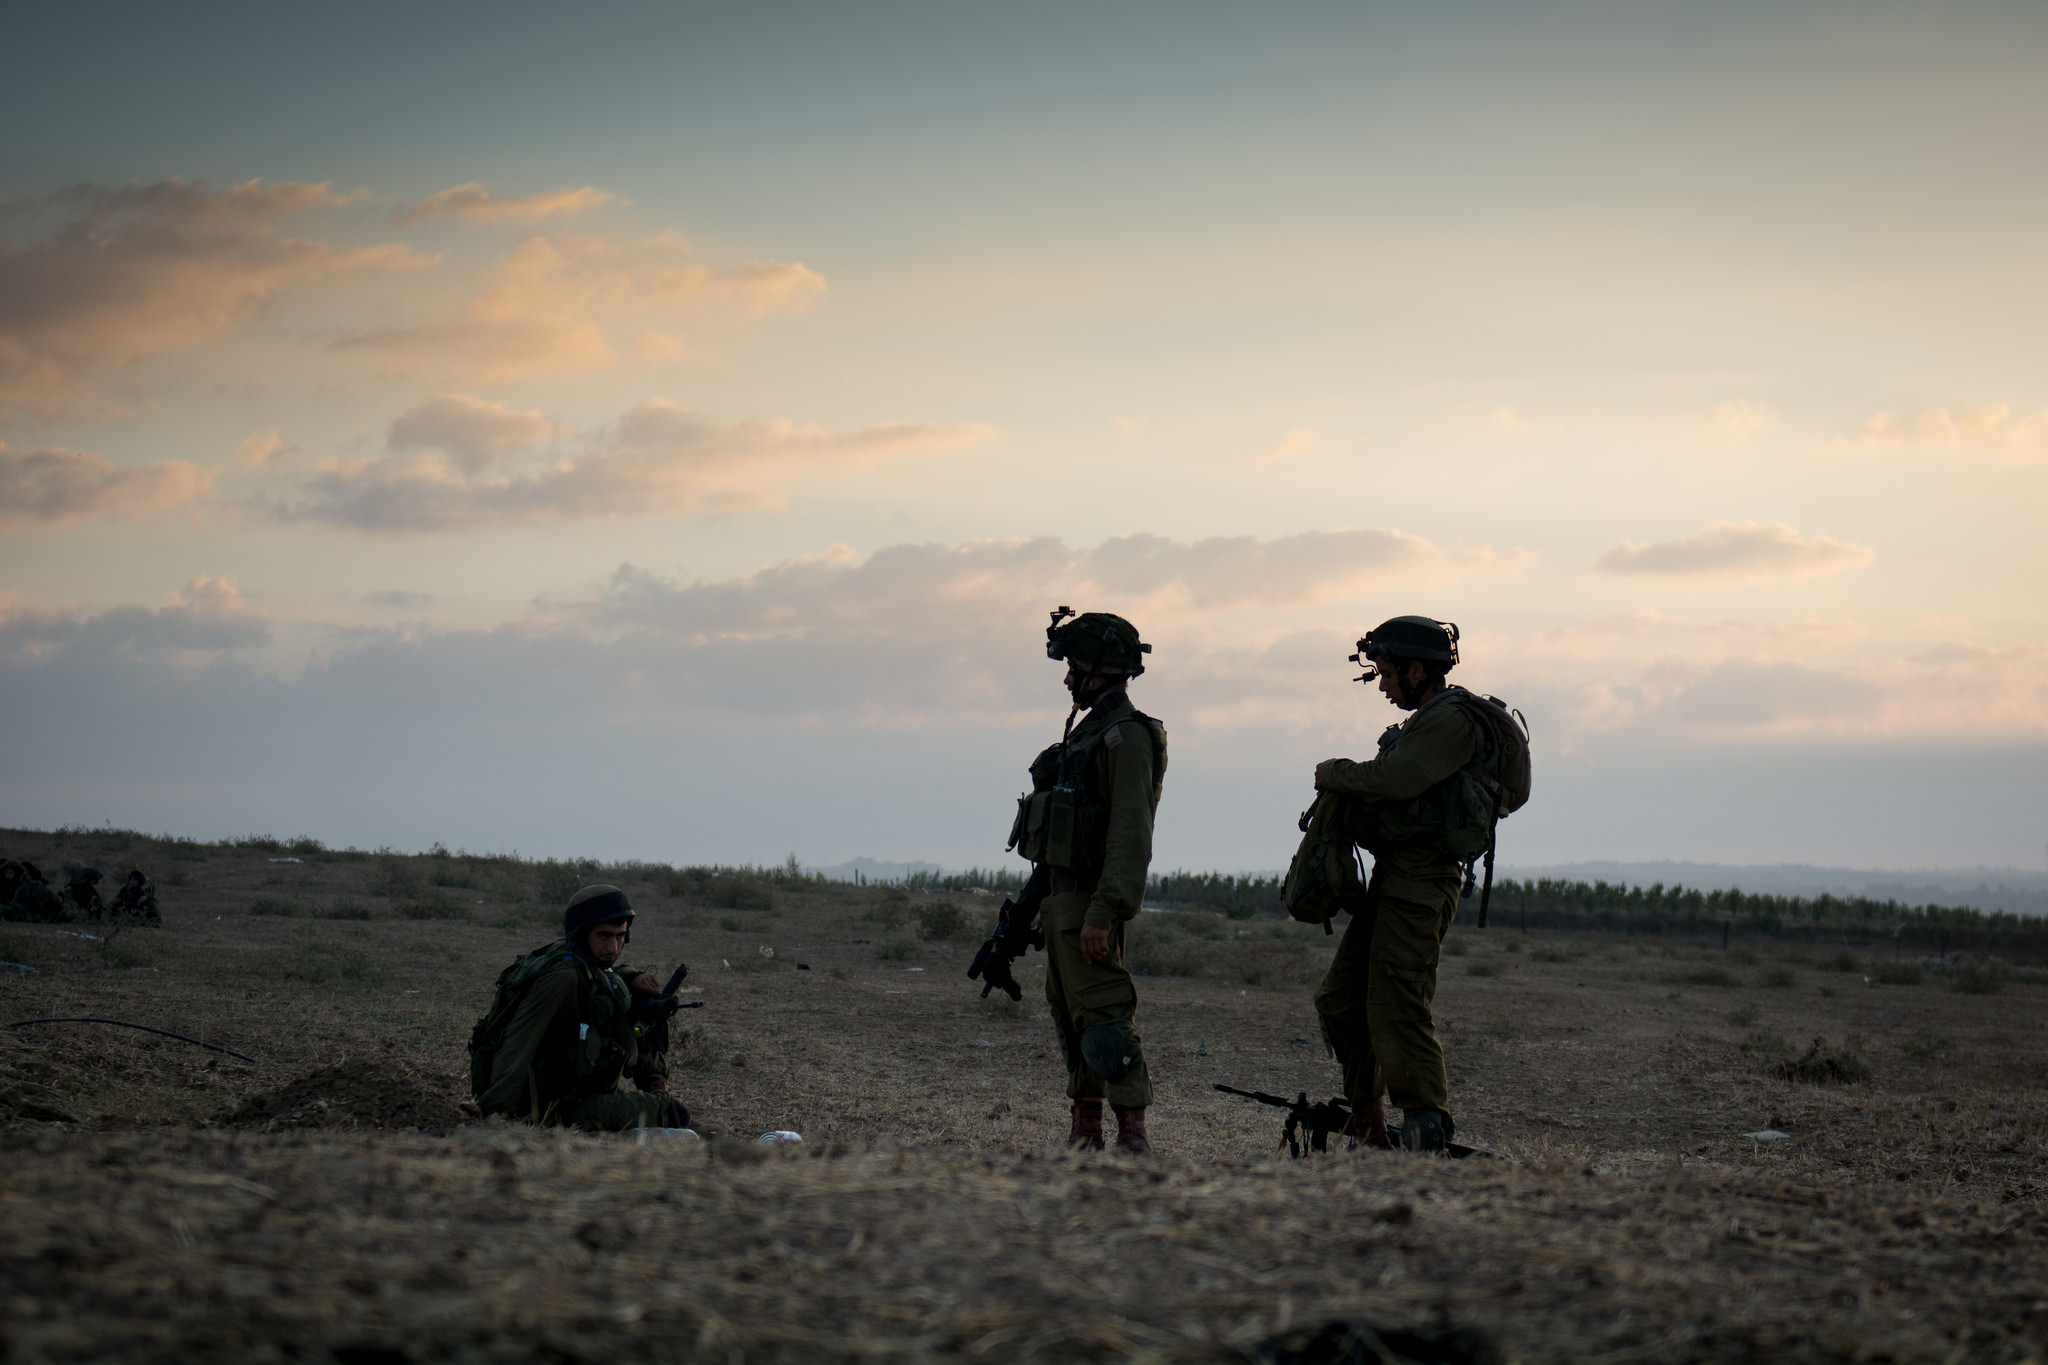 في إسرائيل، تجربة القتال العنيف تحفز الأنشطة الداعمة للسلام